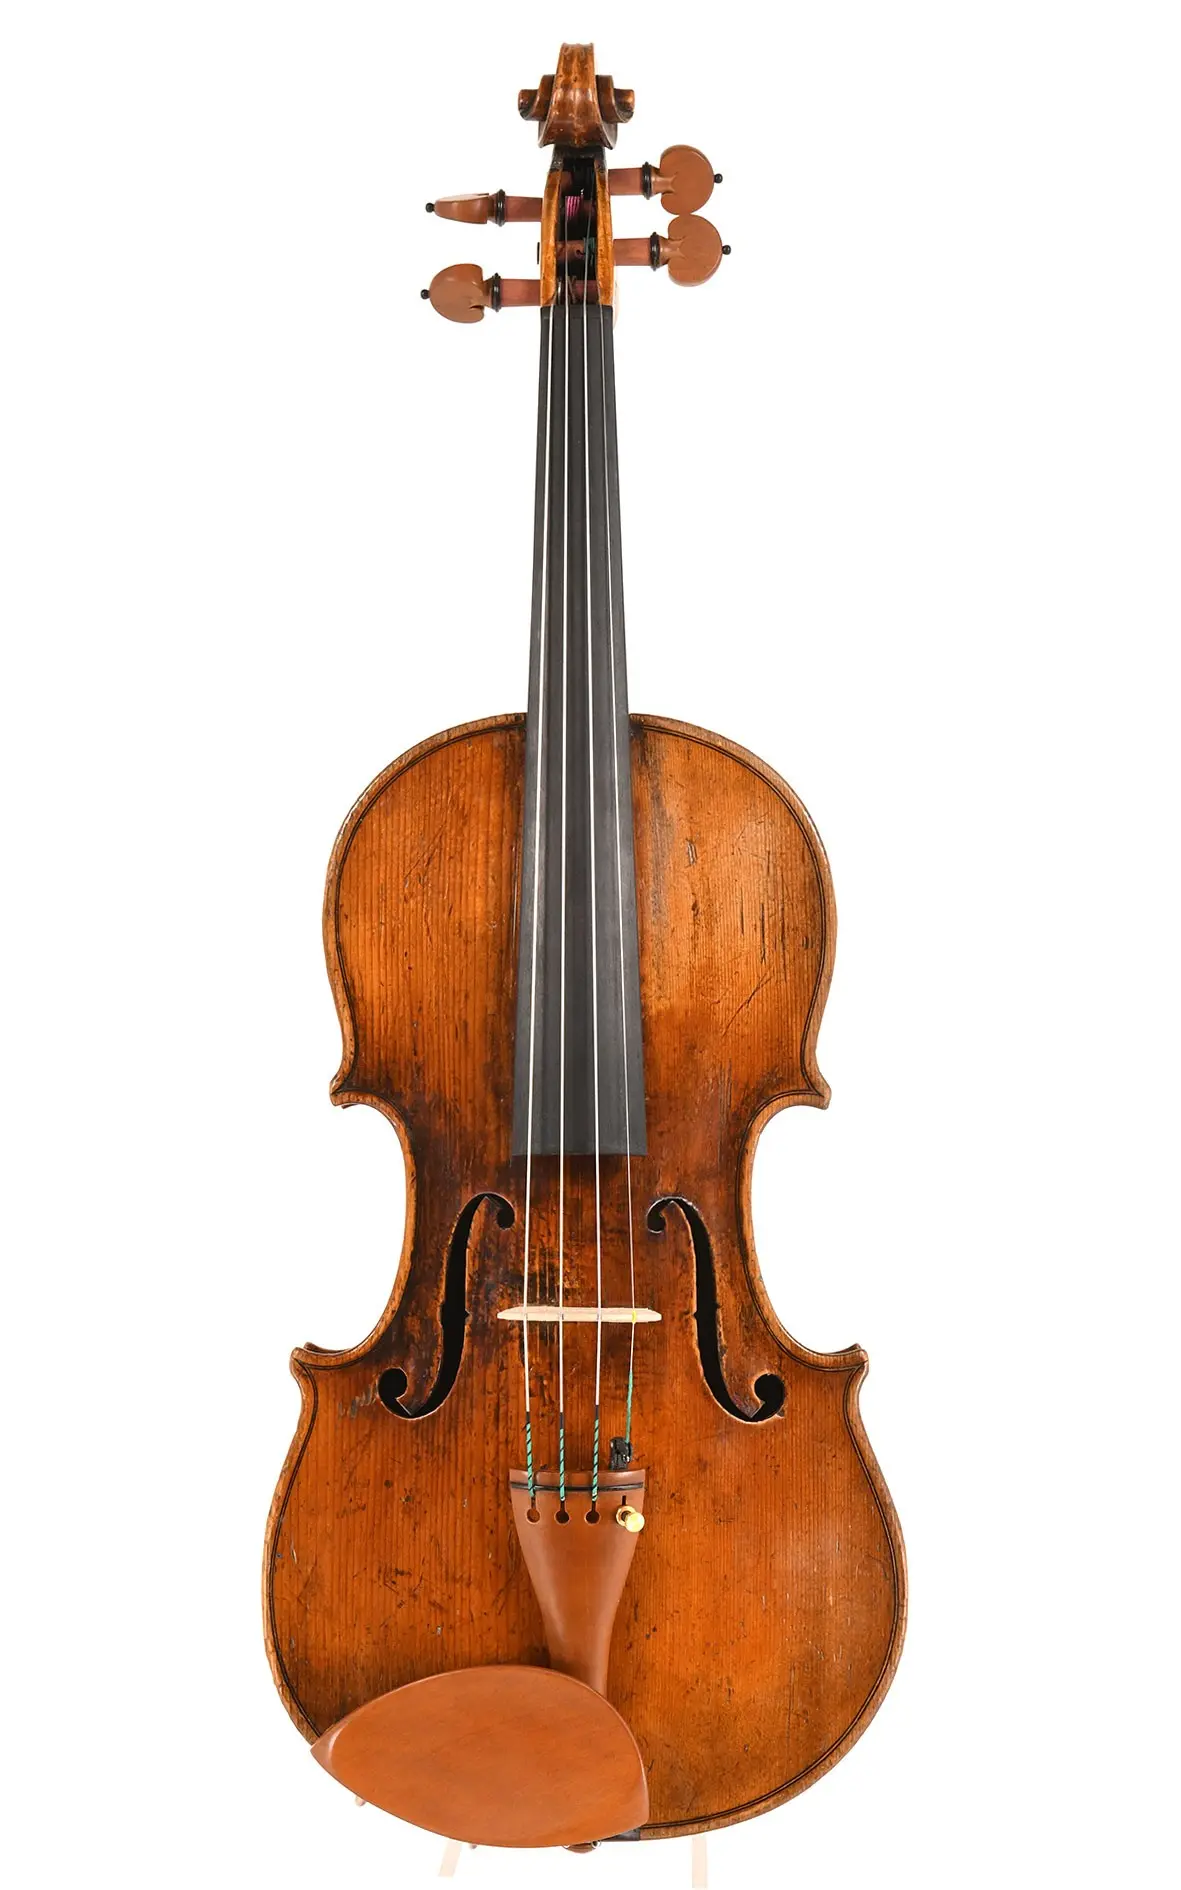 violine englisch - Was ist der Unterschied zwischen einer Violine und einer Geige